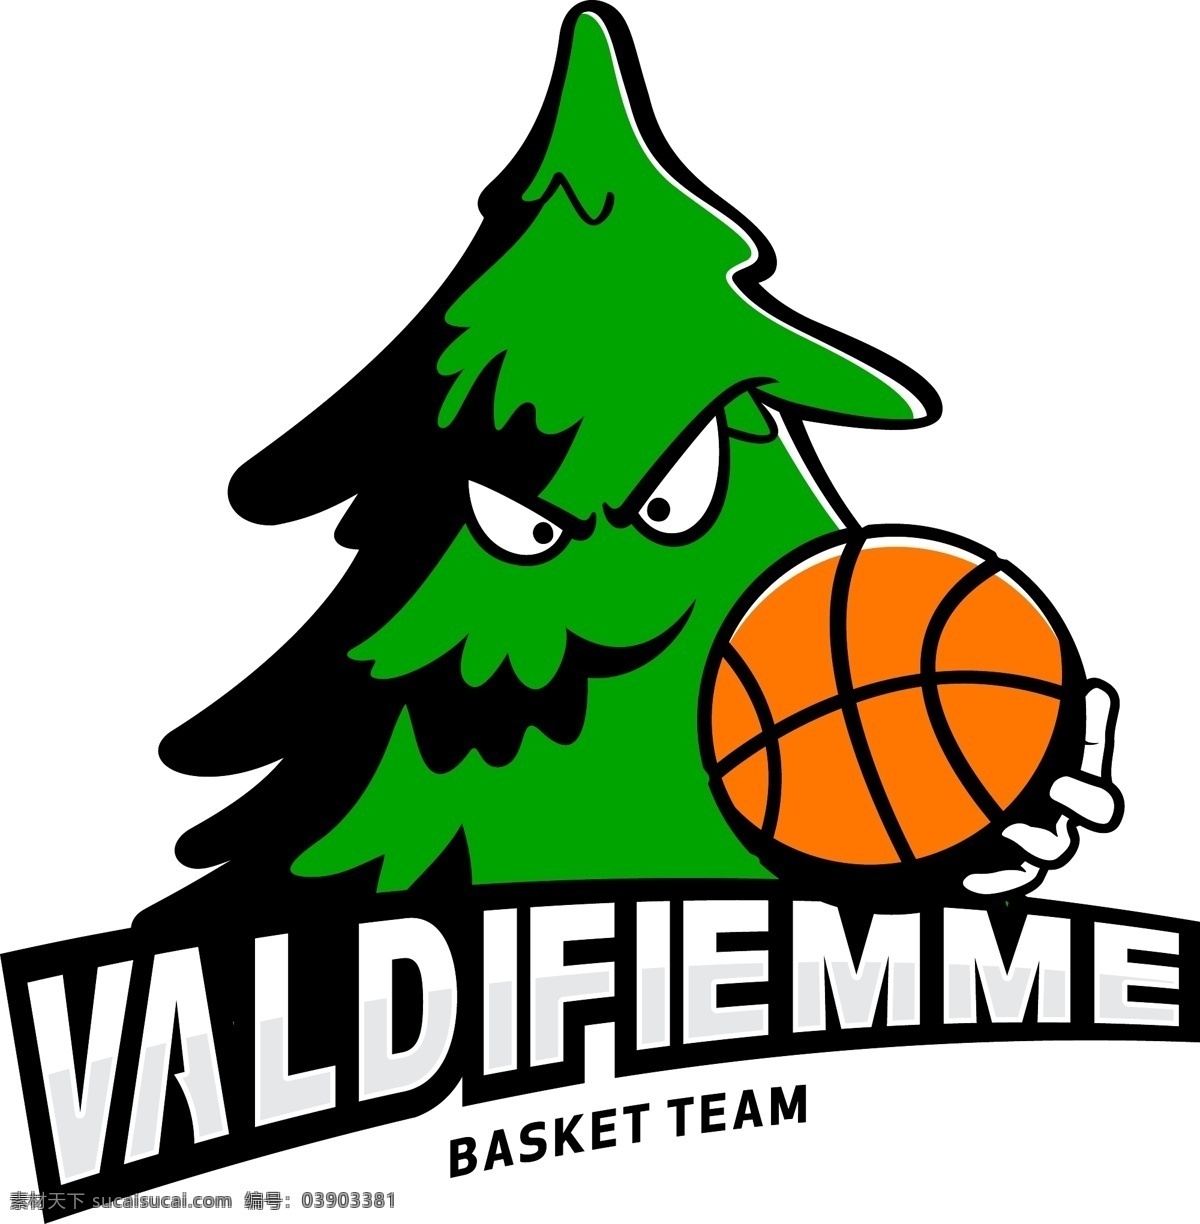 val di fiemme 篮球队 矢量标志下载 免费矢量标识 商标 品牌标识 标识 矢量 免费 品牌 公司 白色